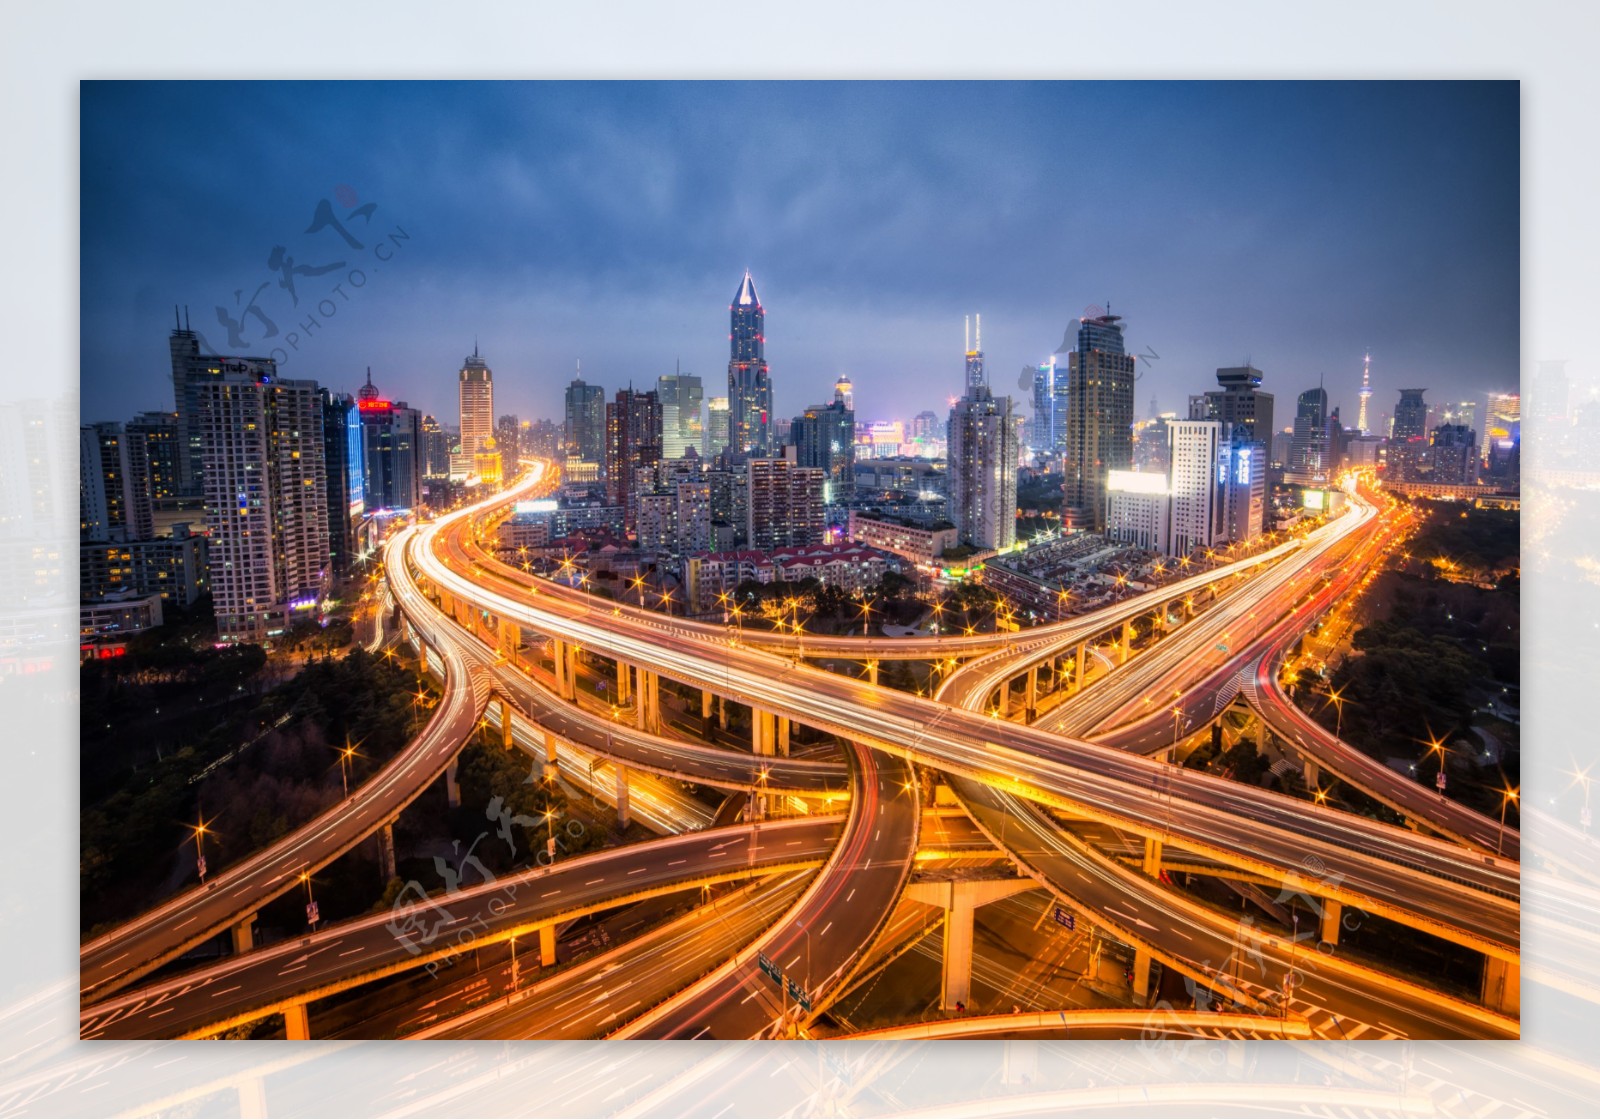 科技城市上海延安路高架城市风光